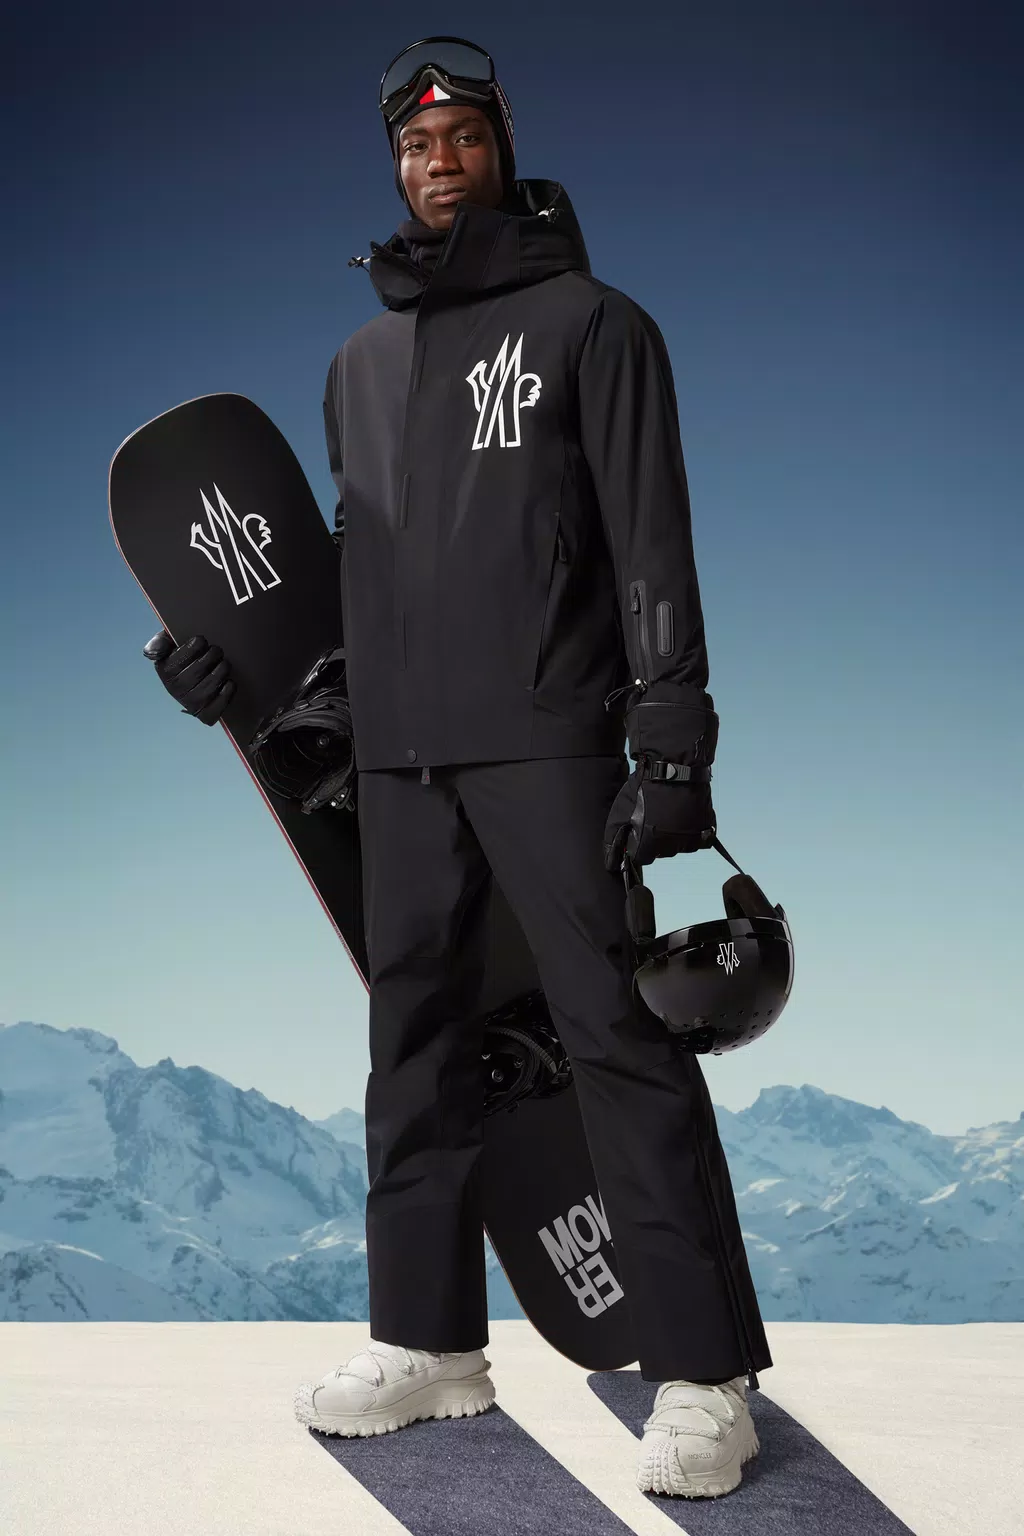 Men's Ski trousers